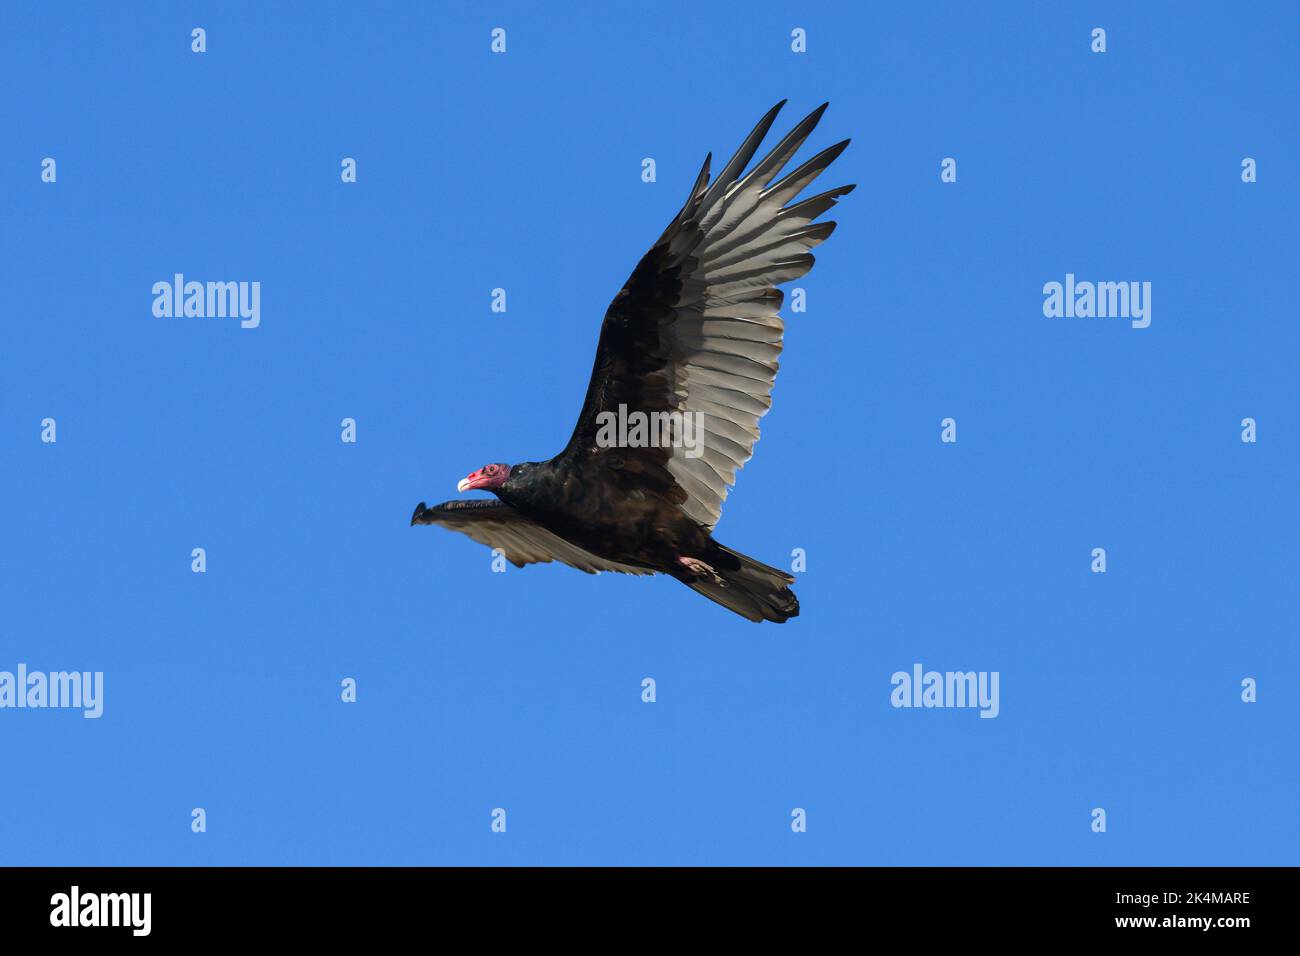 Avvoltoio tacchino con testa rossa e piume nere che si innalzano in posa isolata contro il cielo blu chiaro Foto Stock